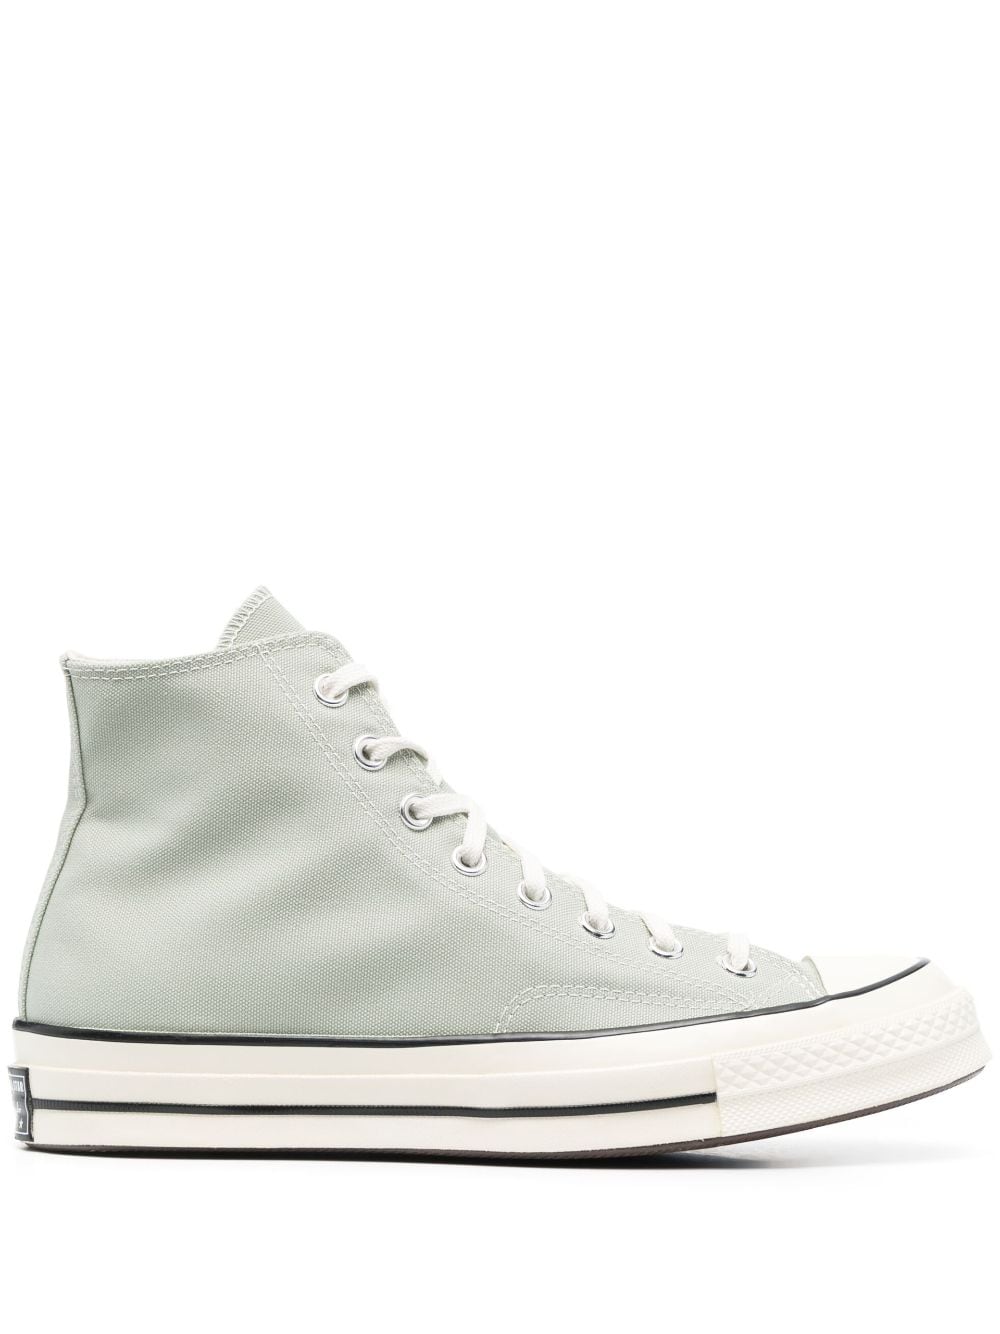 Converse Chuck 70 high-top sneakers - Grey von Converse